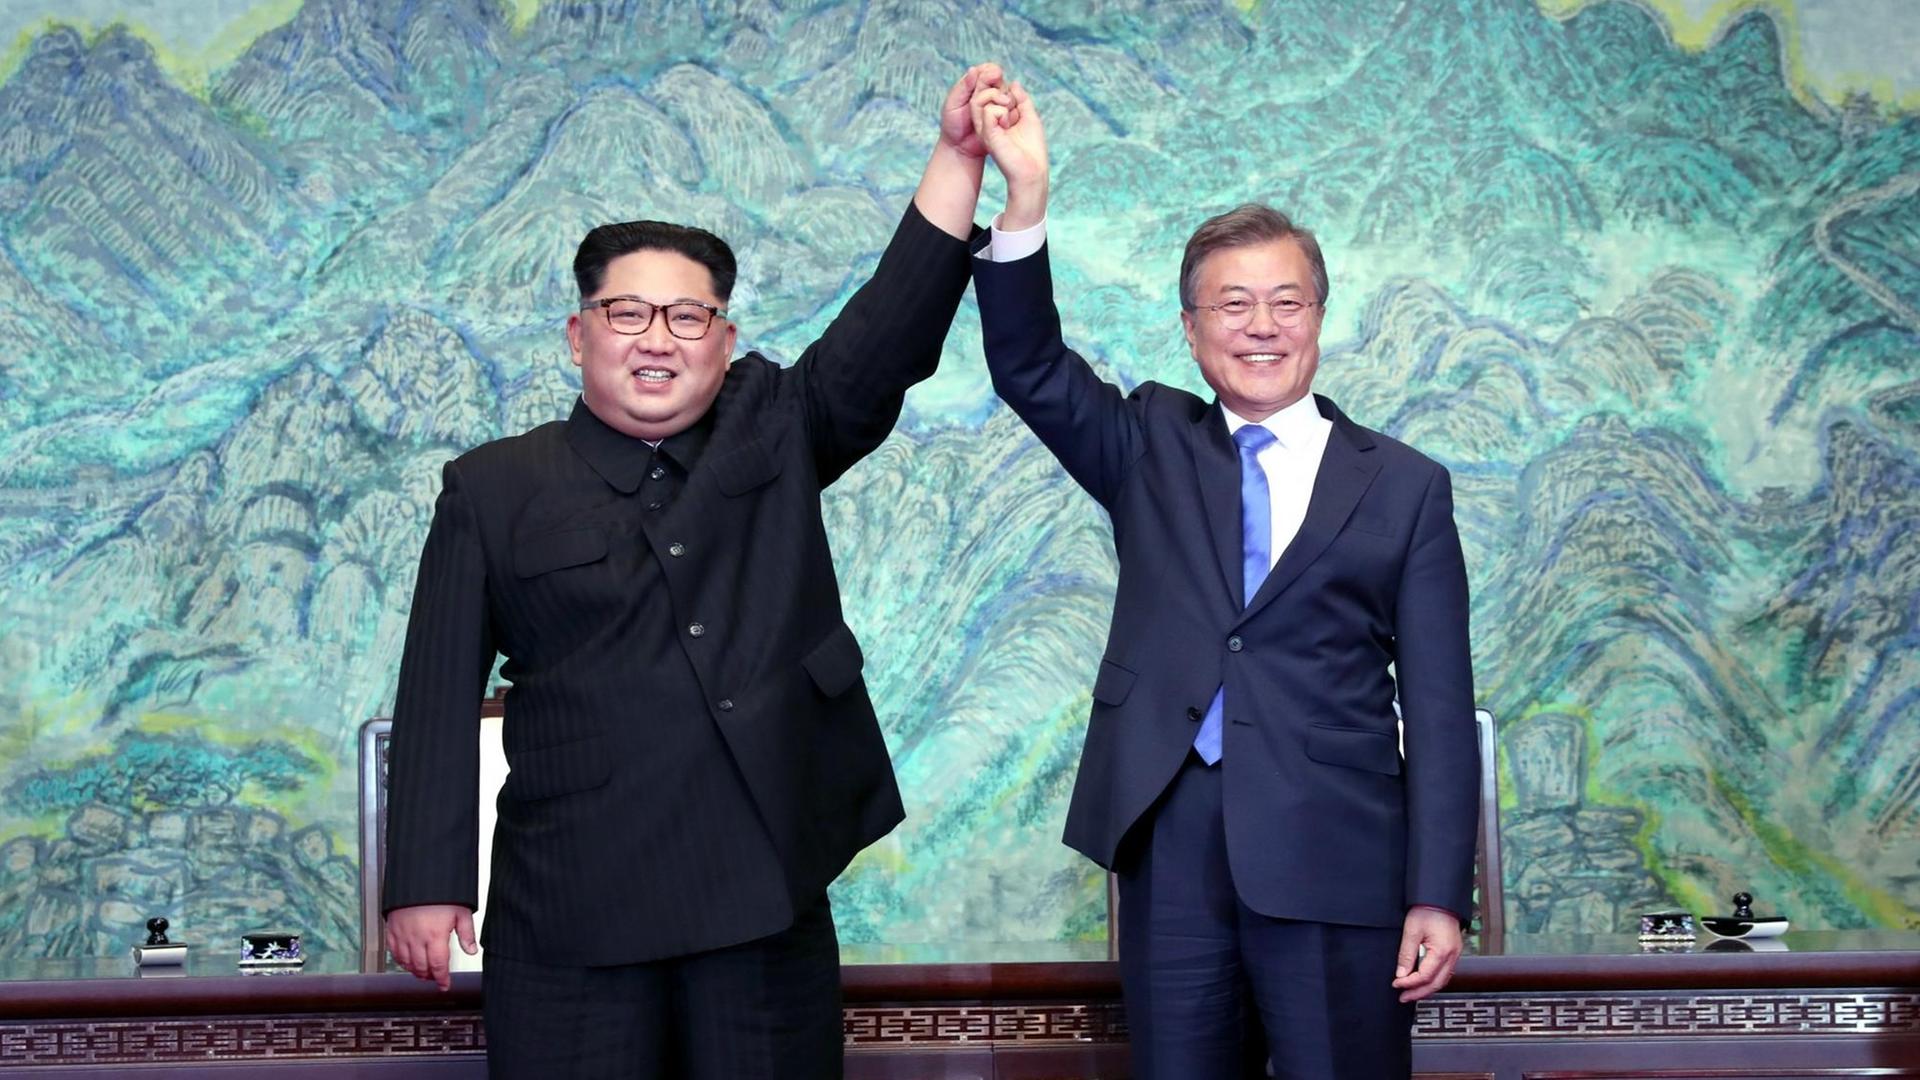 Kim Jong-un un Moon Jae-in halten sich bei ihrem Treffen in Panmunjom an den Händen und diese in die Luft